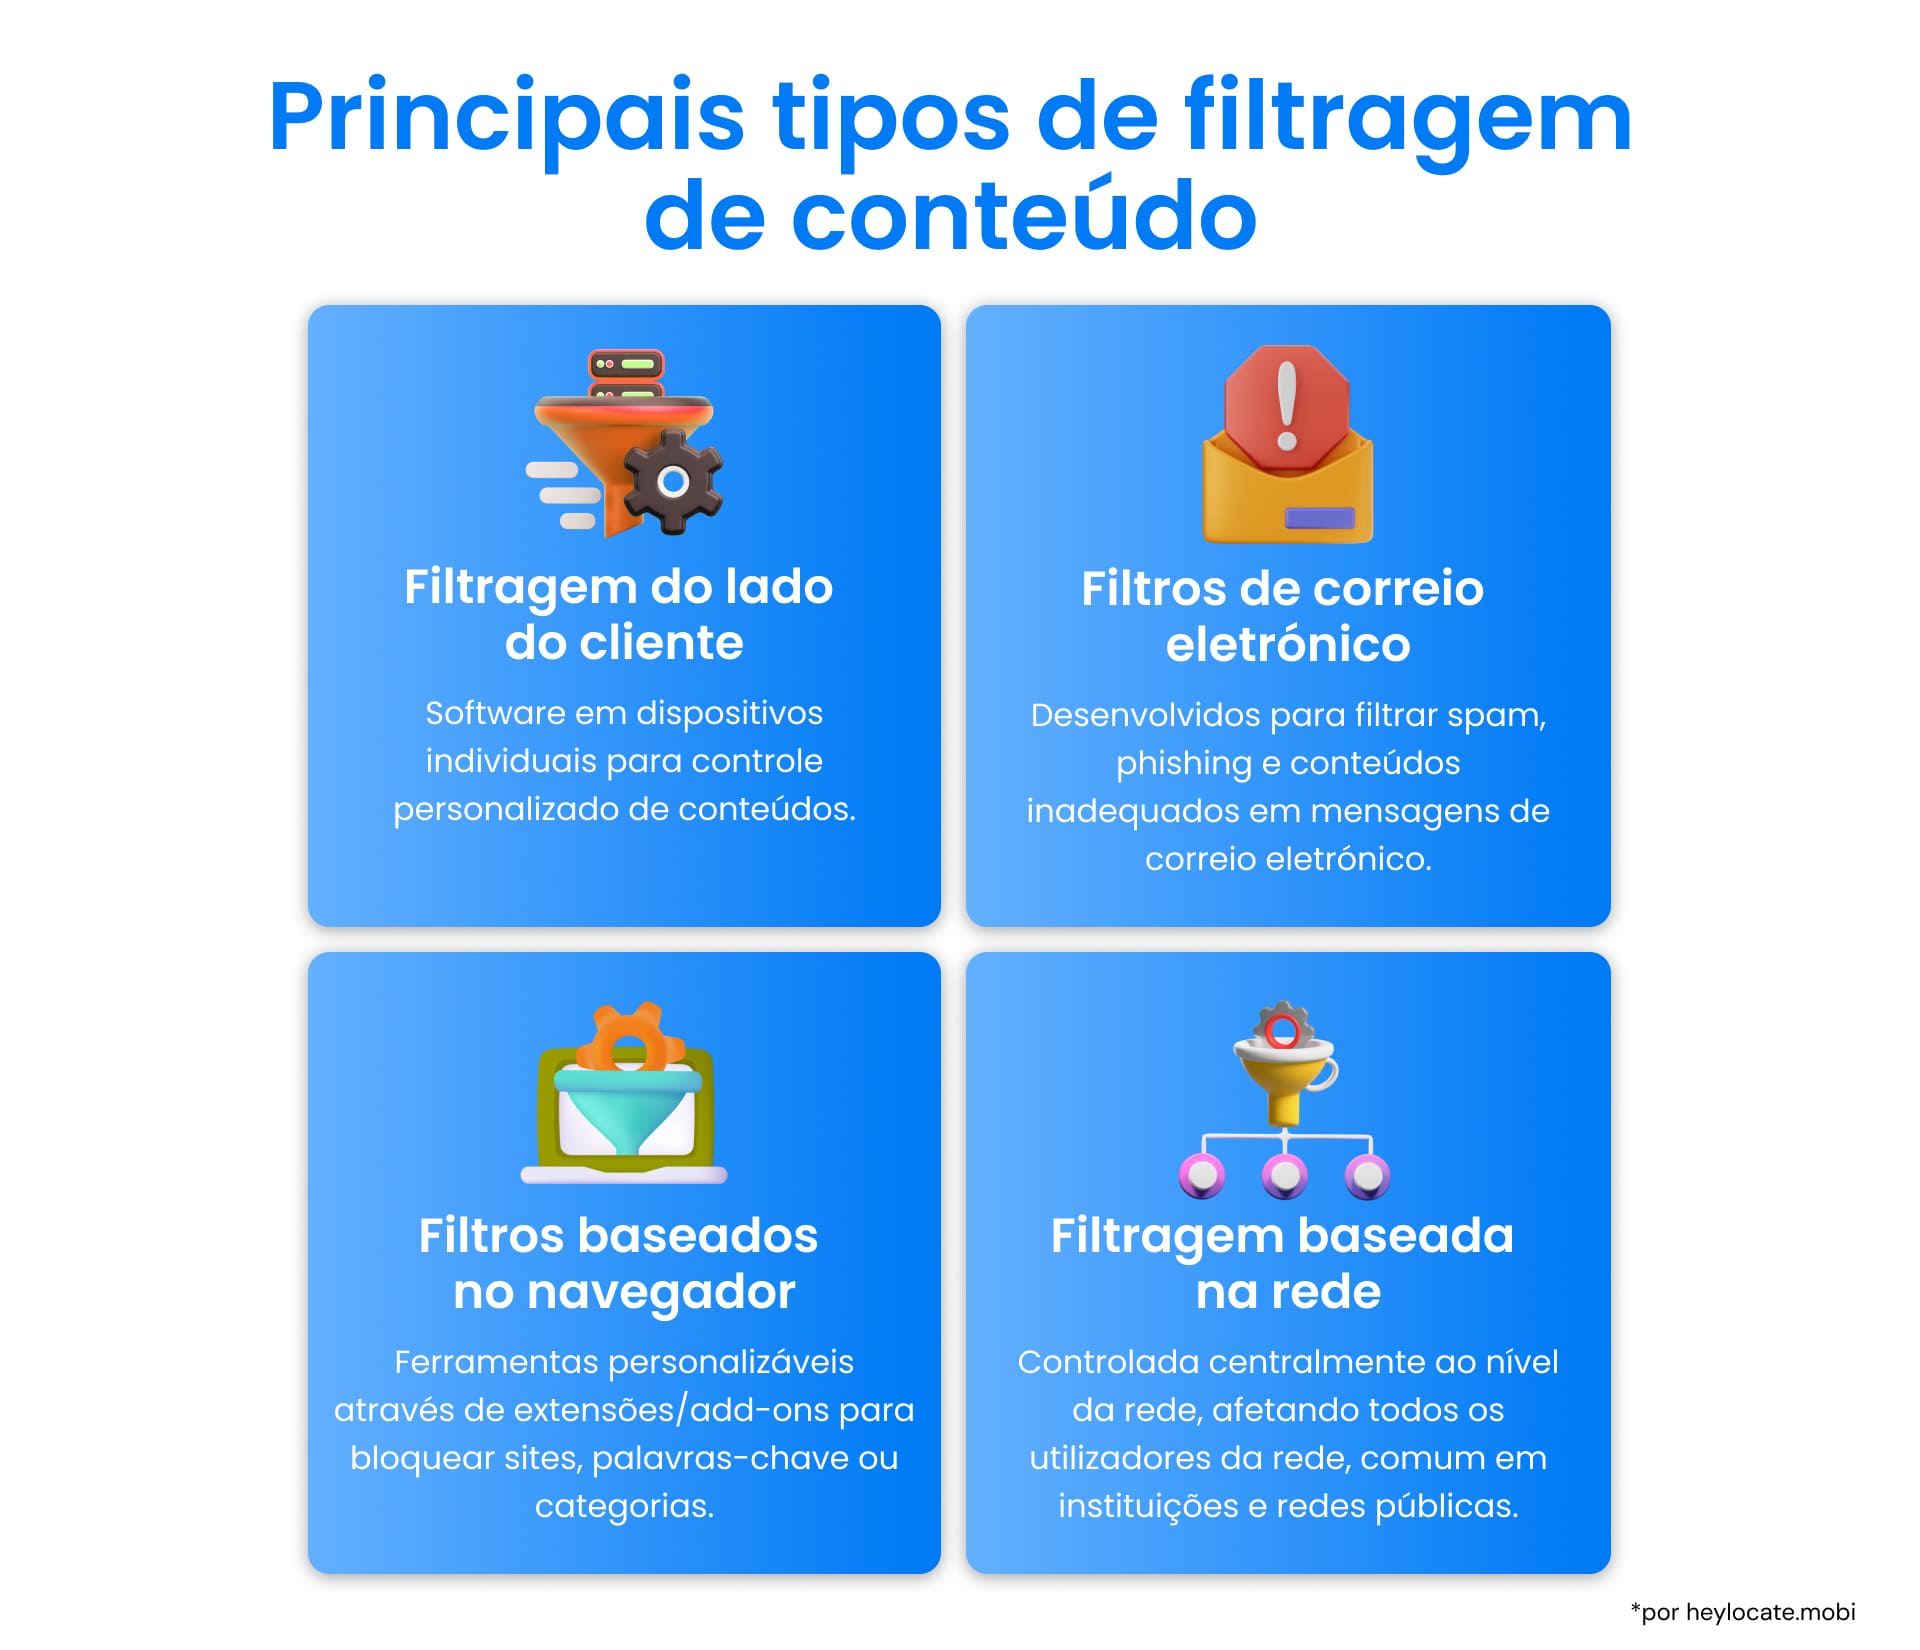 Uma representação dos principais tipos de filtragem de conteúdo: Filtragem baseada em cliente; filtros de e-mail; filtros baseados em navegador; filtragem baseada em rede